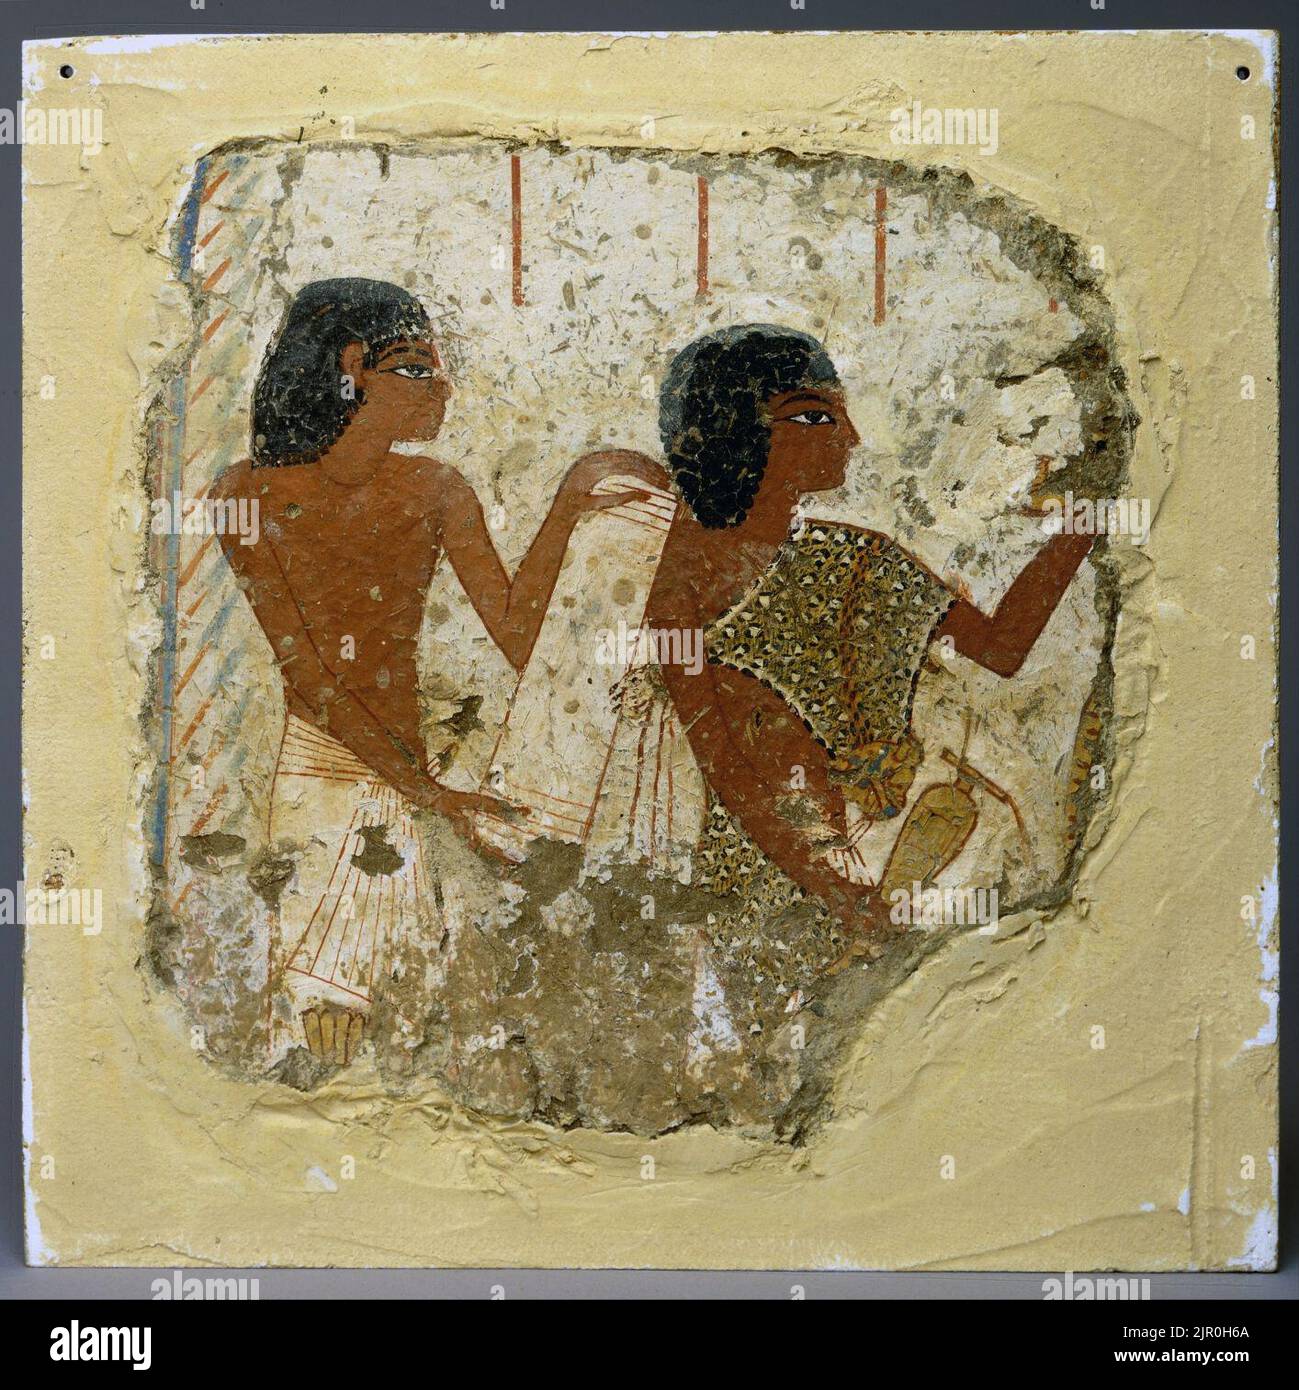 Pintura de la tumba que representa a dos sacerdotes, uno sosteniendo un rollo de papiro y el otro un jarrón para las libaciones (... Foto de stock